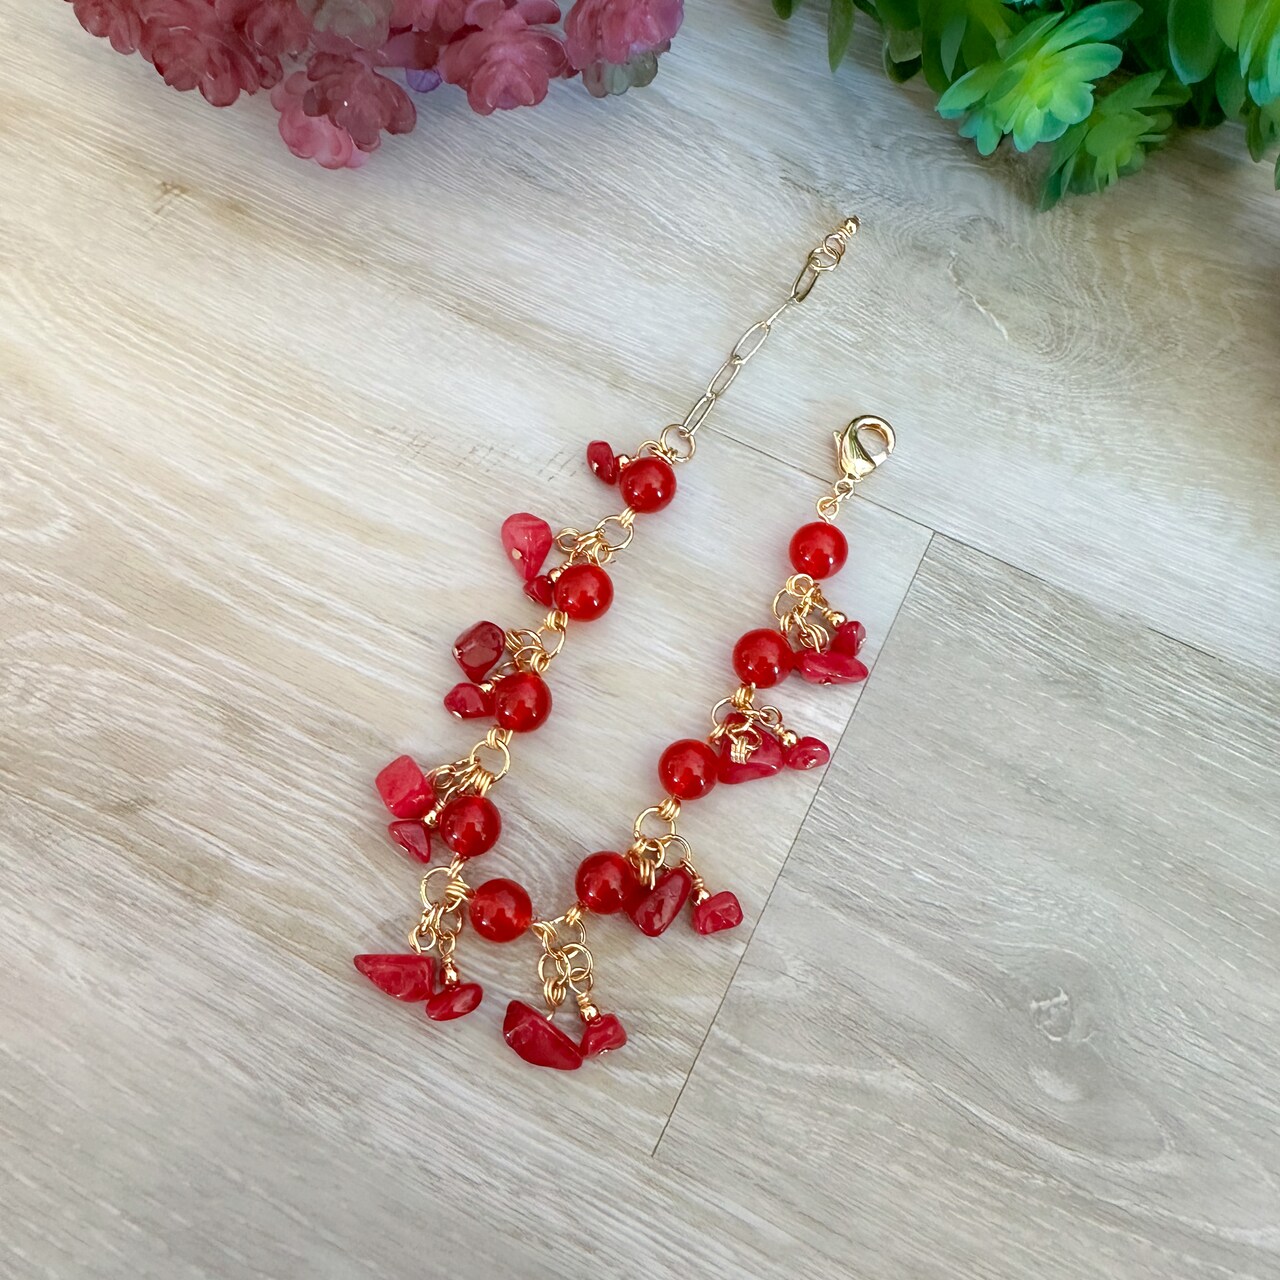 Poppy Flowers Cluster Bracelet with @daniellewickesjewelry